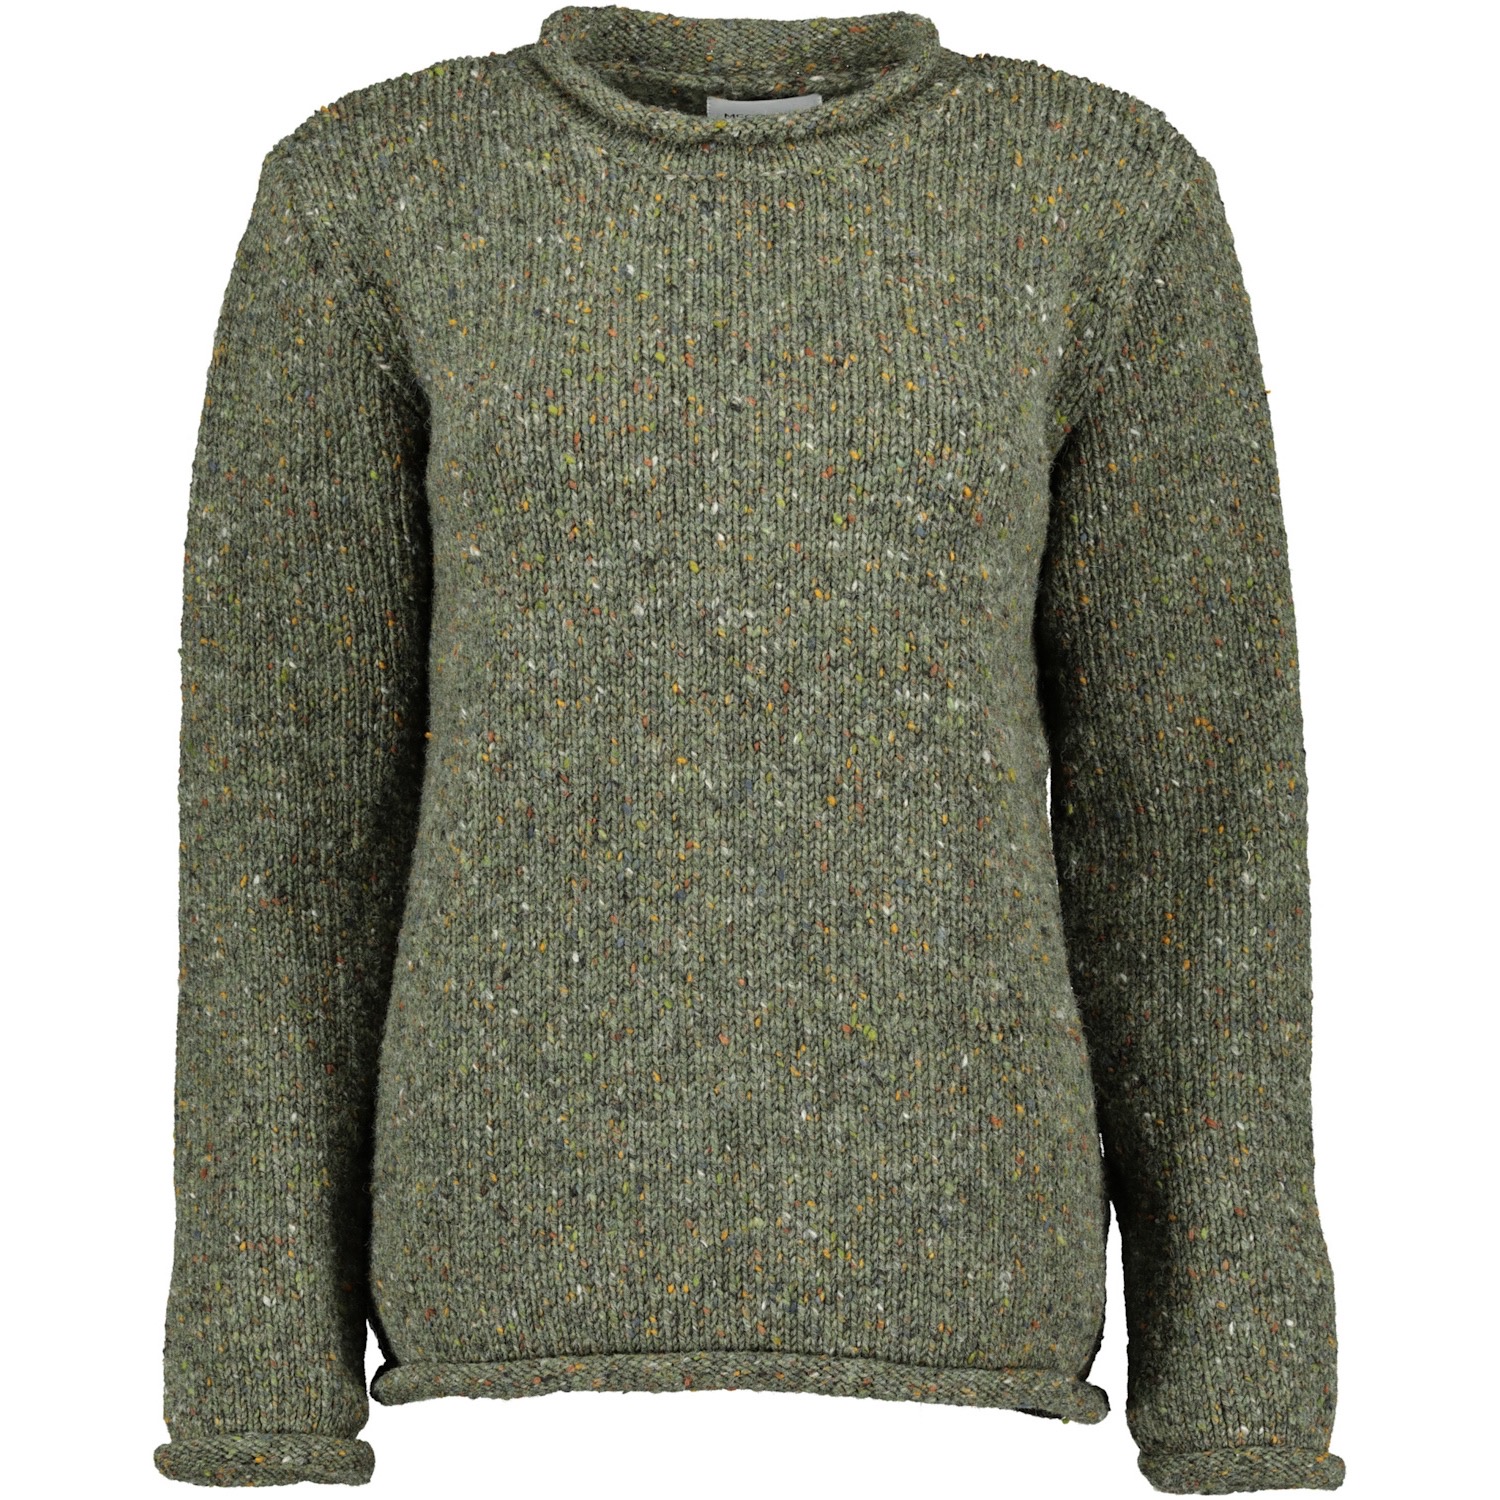 Killaloe Tweed Roll Neck Sweater - Fern